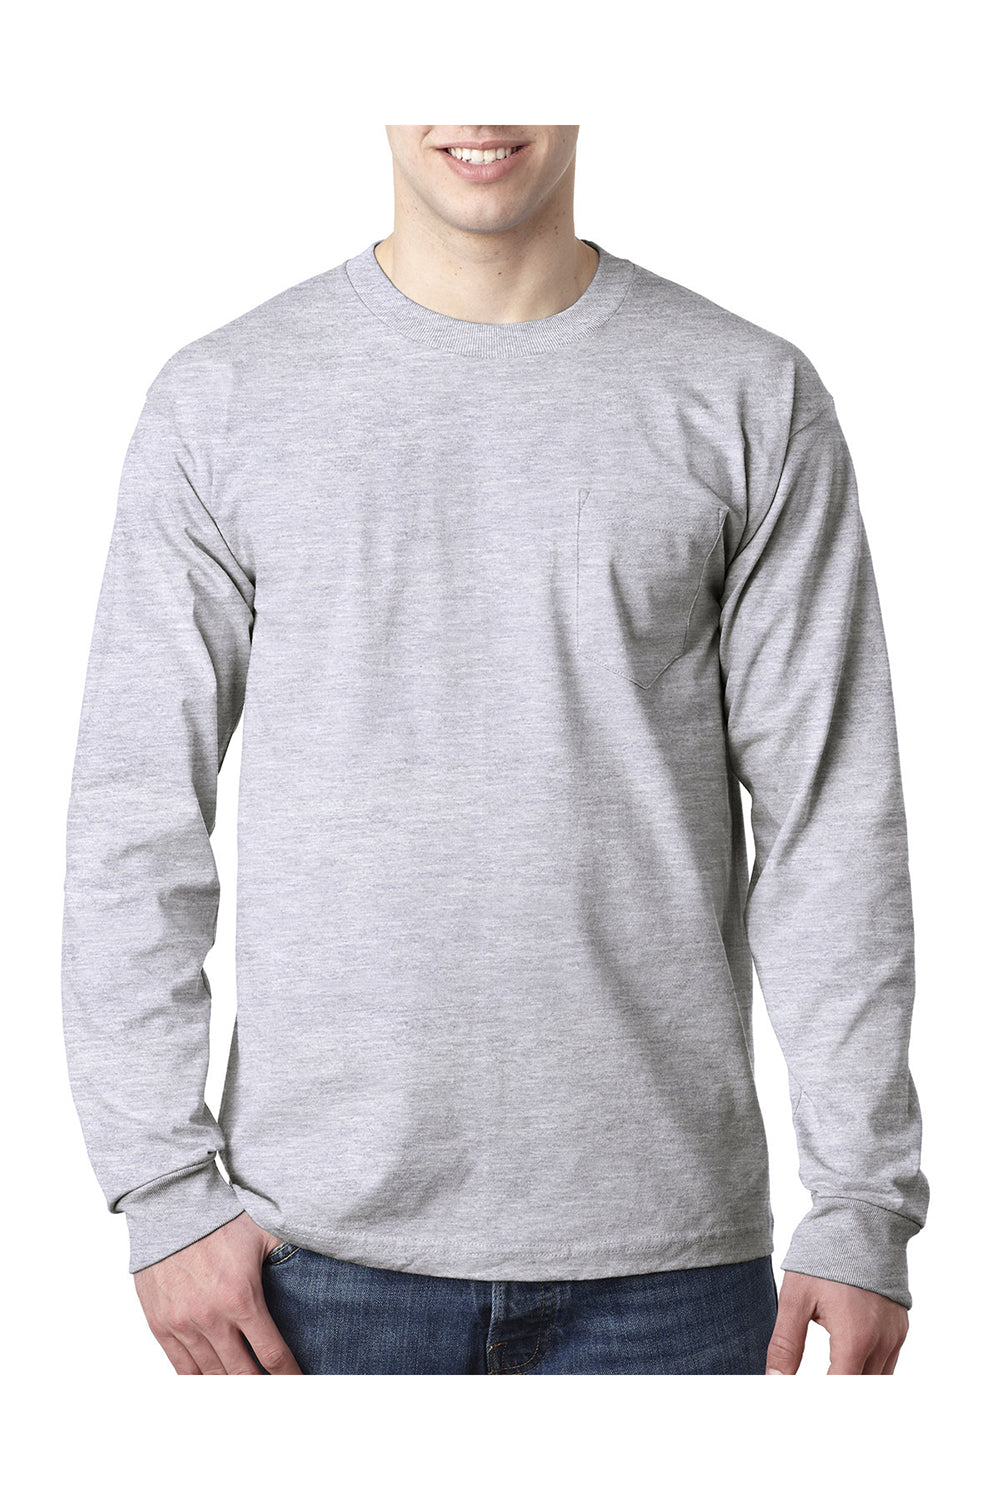 Bayside BA8100 Mens USA Made Long Sleeve Crewneck T-Shirt w/ Pocket Ash Grey Model Front